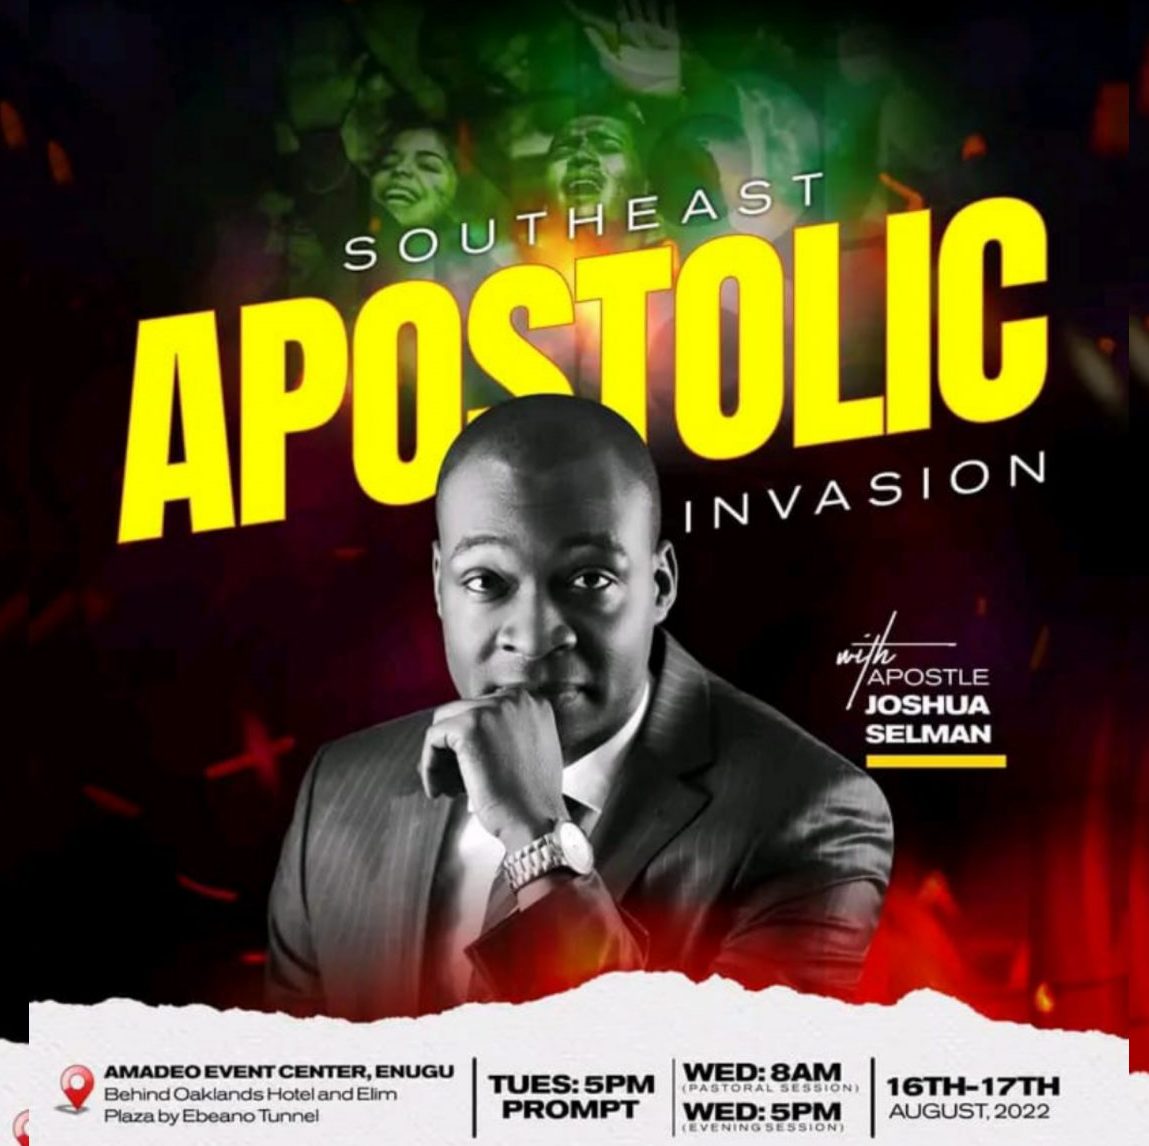 Enugu Apostolic Invasion 2022 With Apostle Joshua Selman